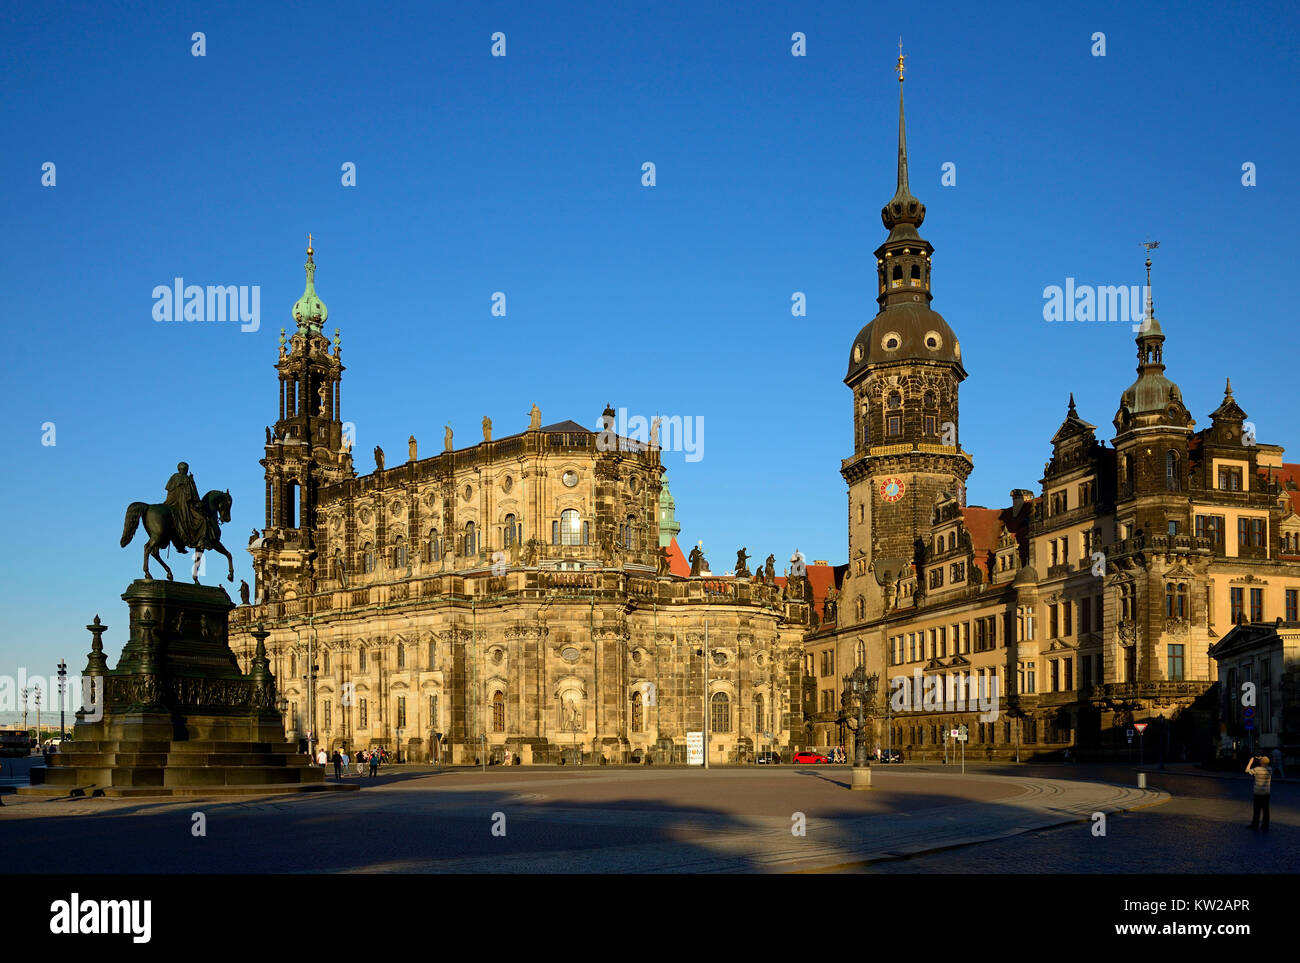 A Dresda, la piazza del teatro con la cattedrale e il castello di residenza, Theaterplatz mit Kathedrale und Residenzschloss Foto Stock